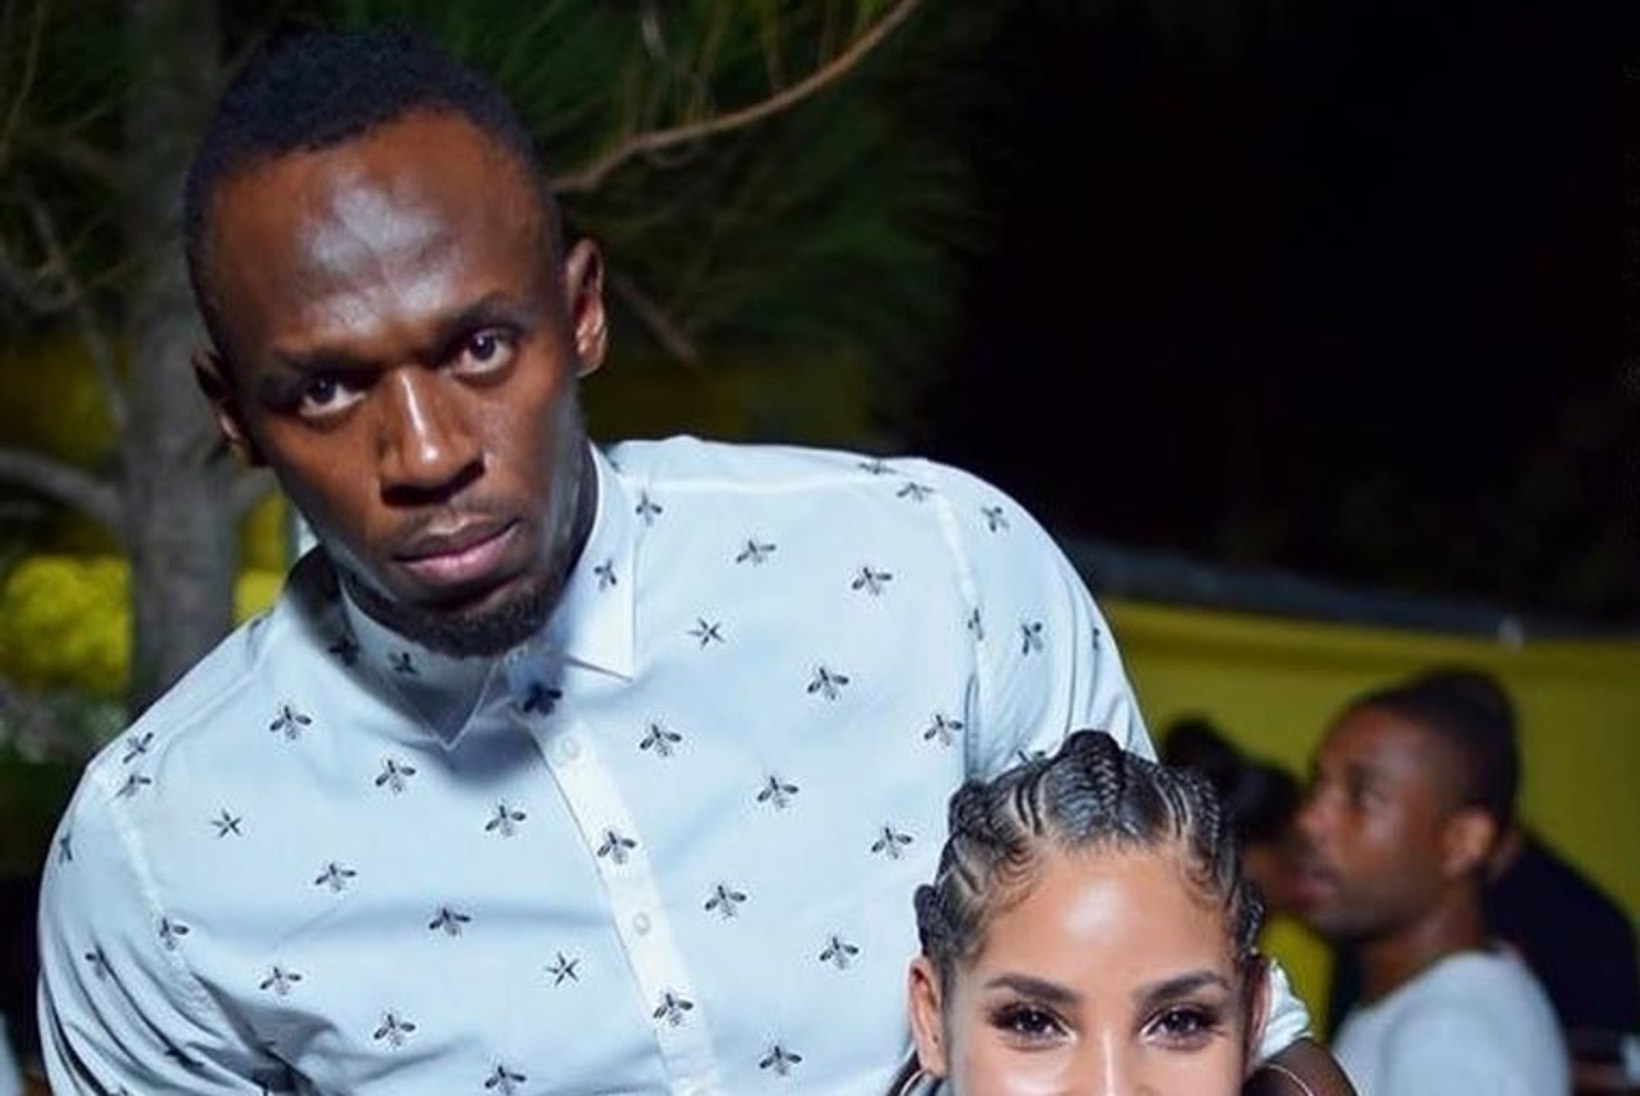 SEKSAPIILSED FOTOD | Usain Bolt naudib oma pensionipõlve megarinnaka tüdruksõbraga 